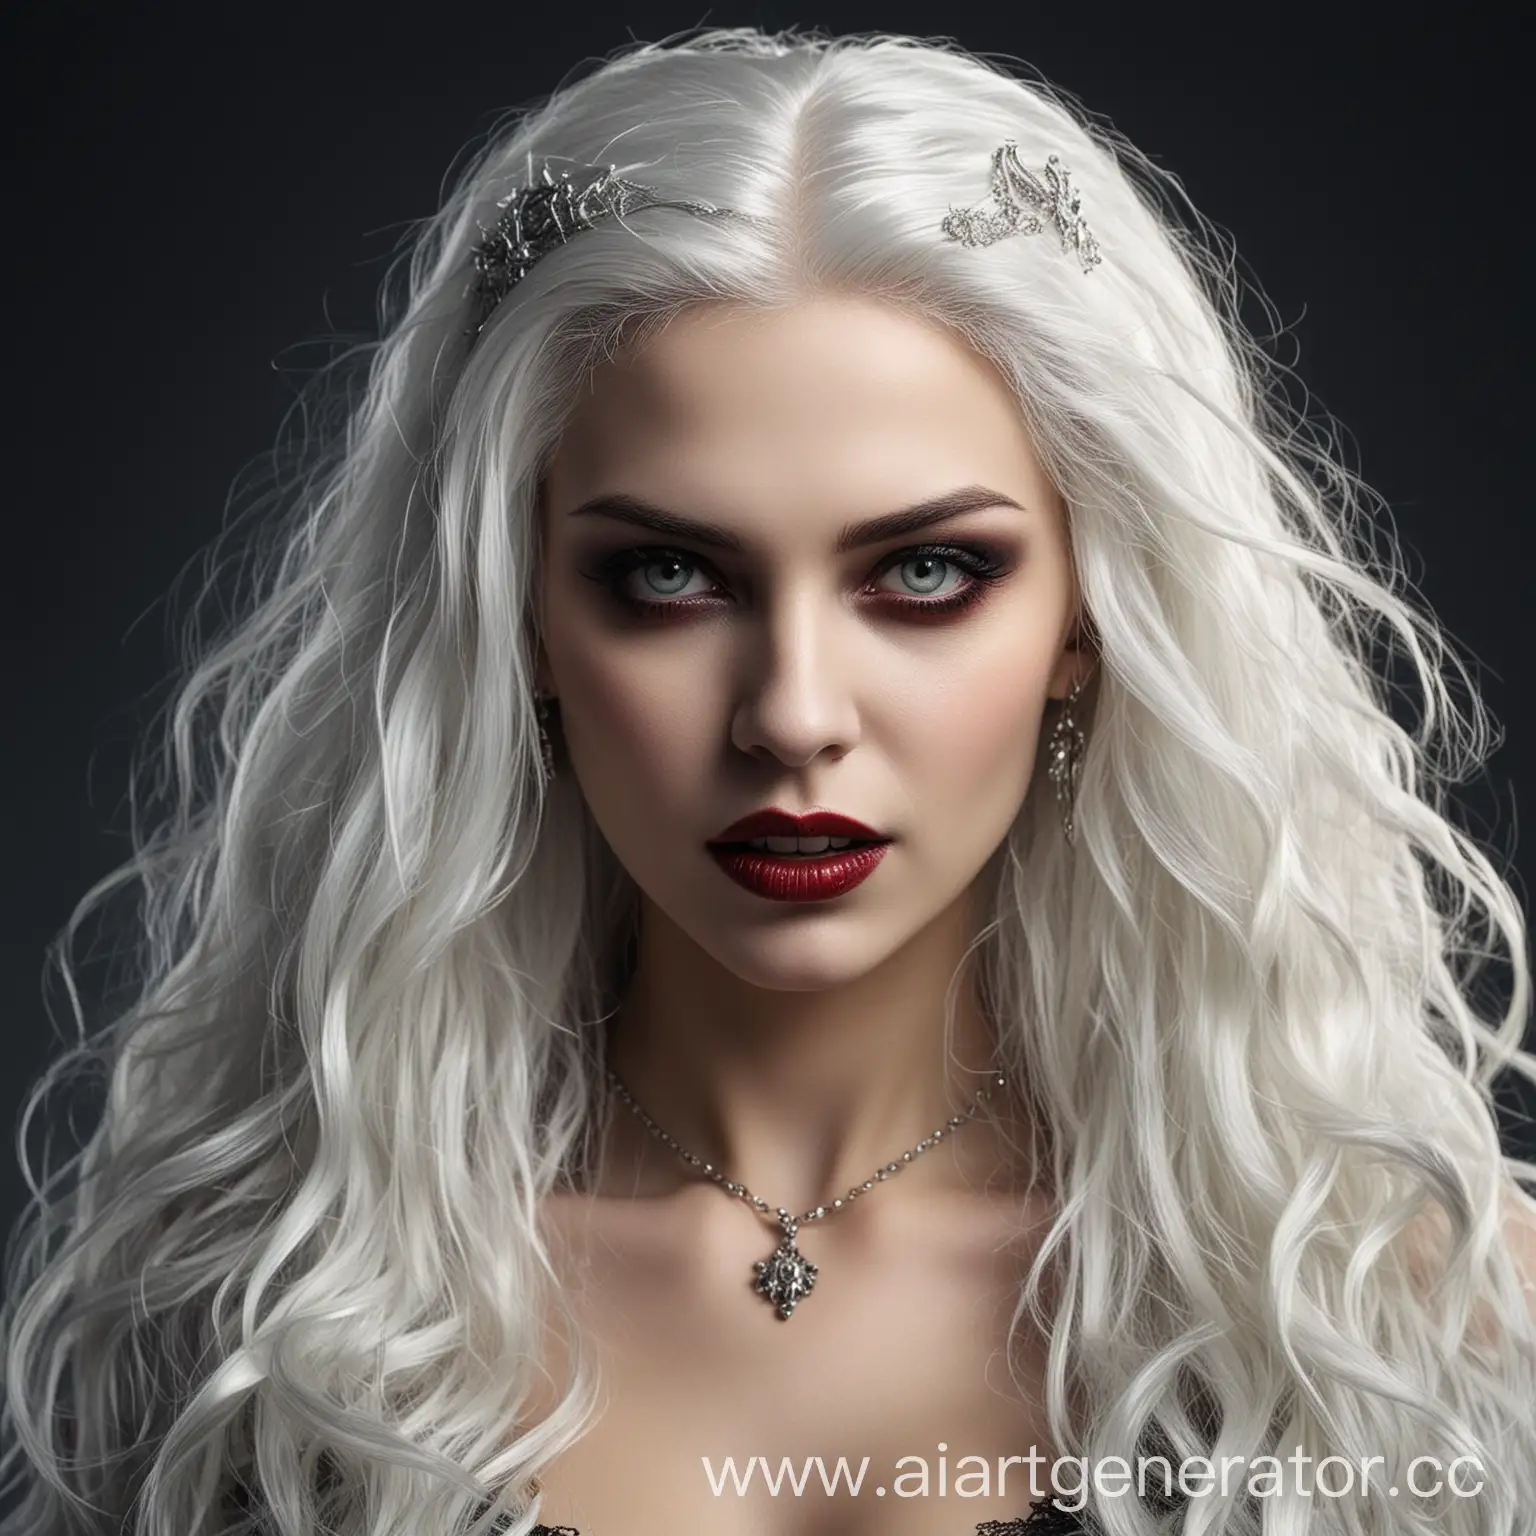 вампир женщина в белыми волосами

